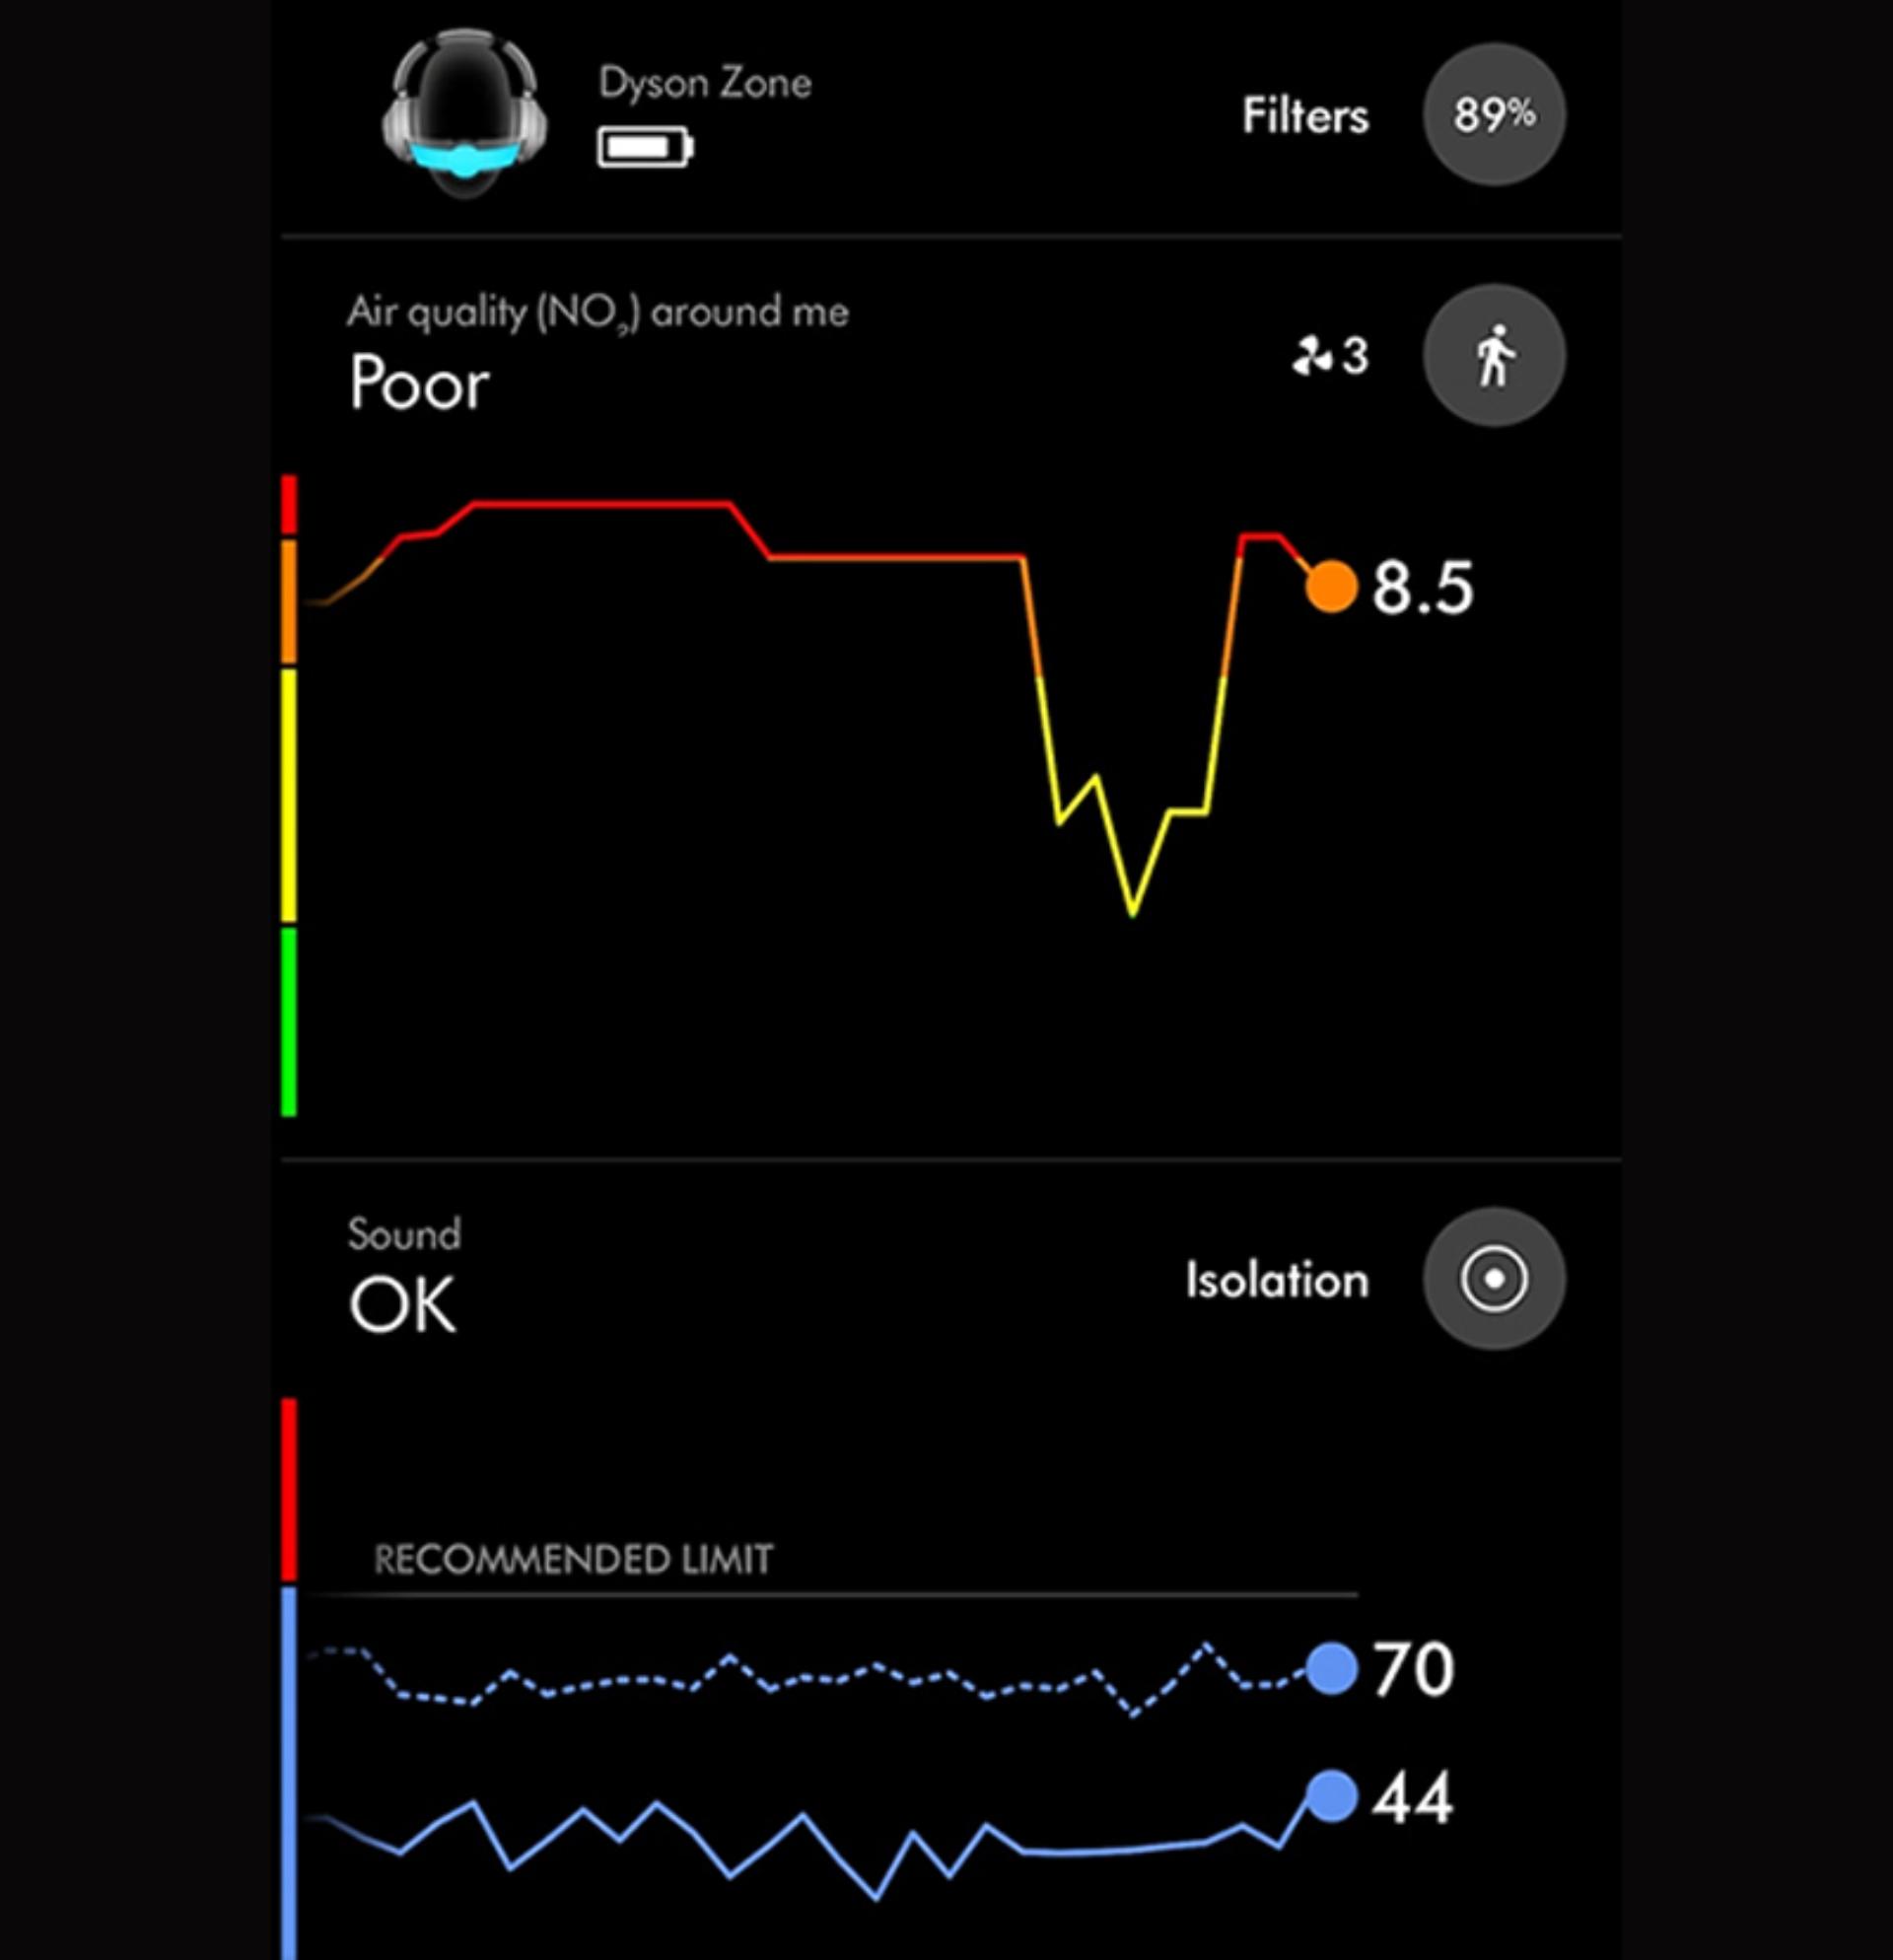 wykres danych w aplikacji MyDyson na ekranie smartfona